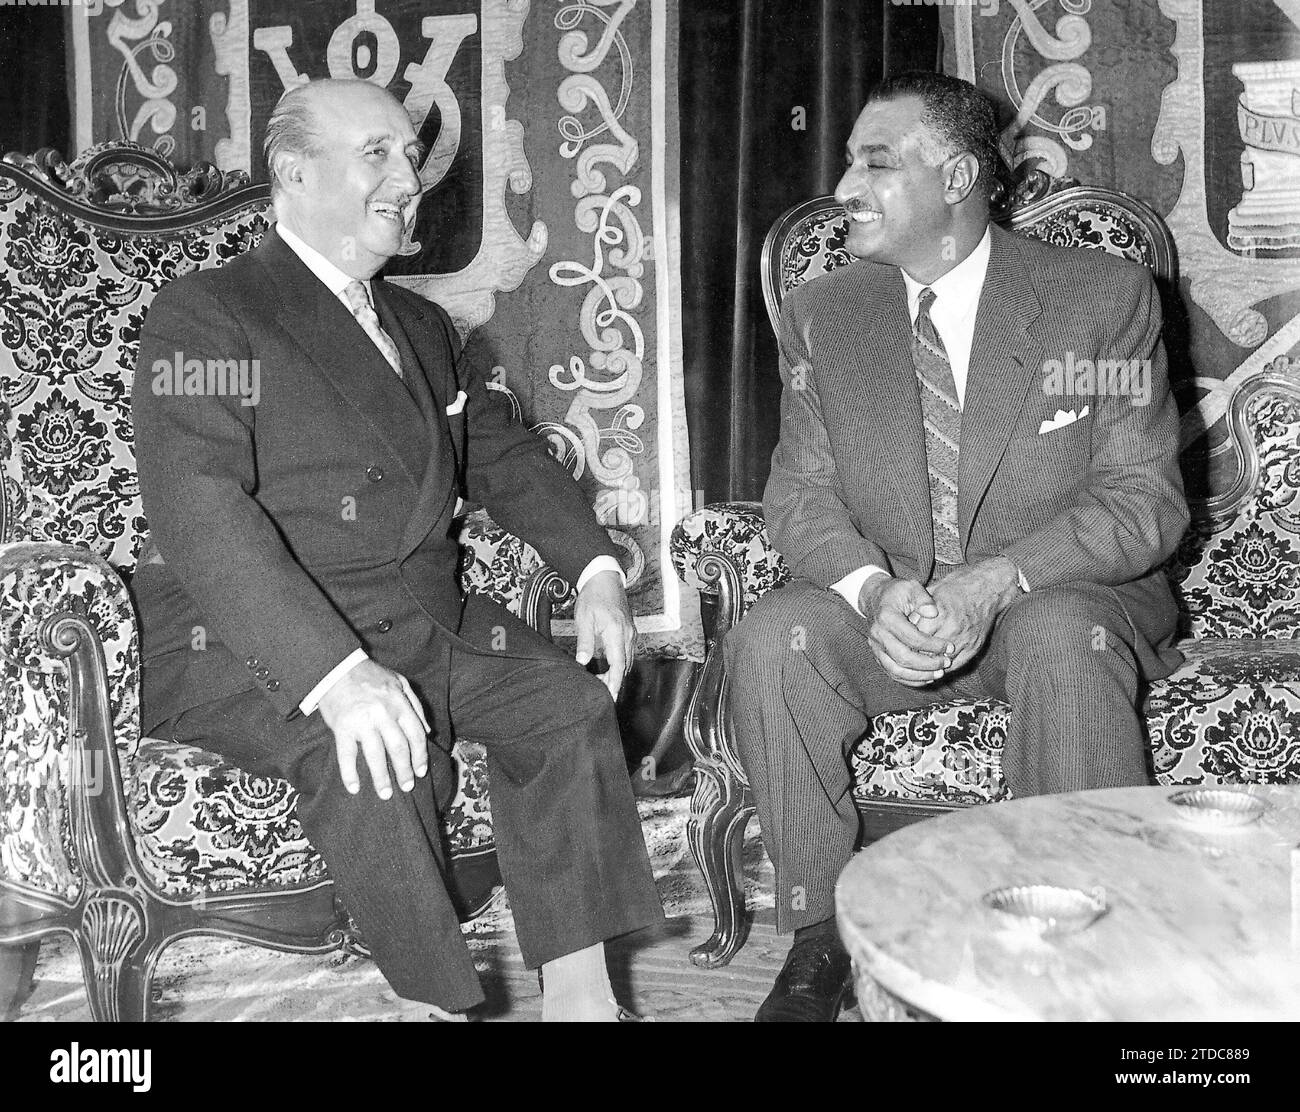 09/02/1960. Francisco Franco and Gamal Abdel Nasser. Credit: Album / Archivo ABC / Manuel Sanz Bermejo Stock Photo